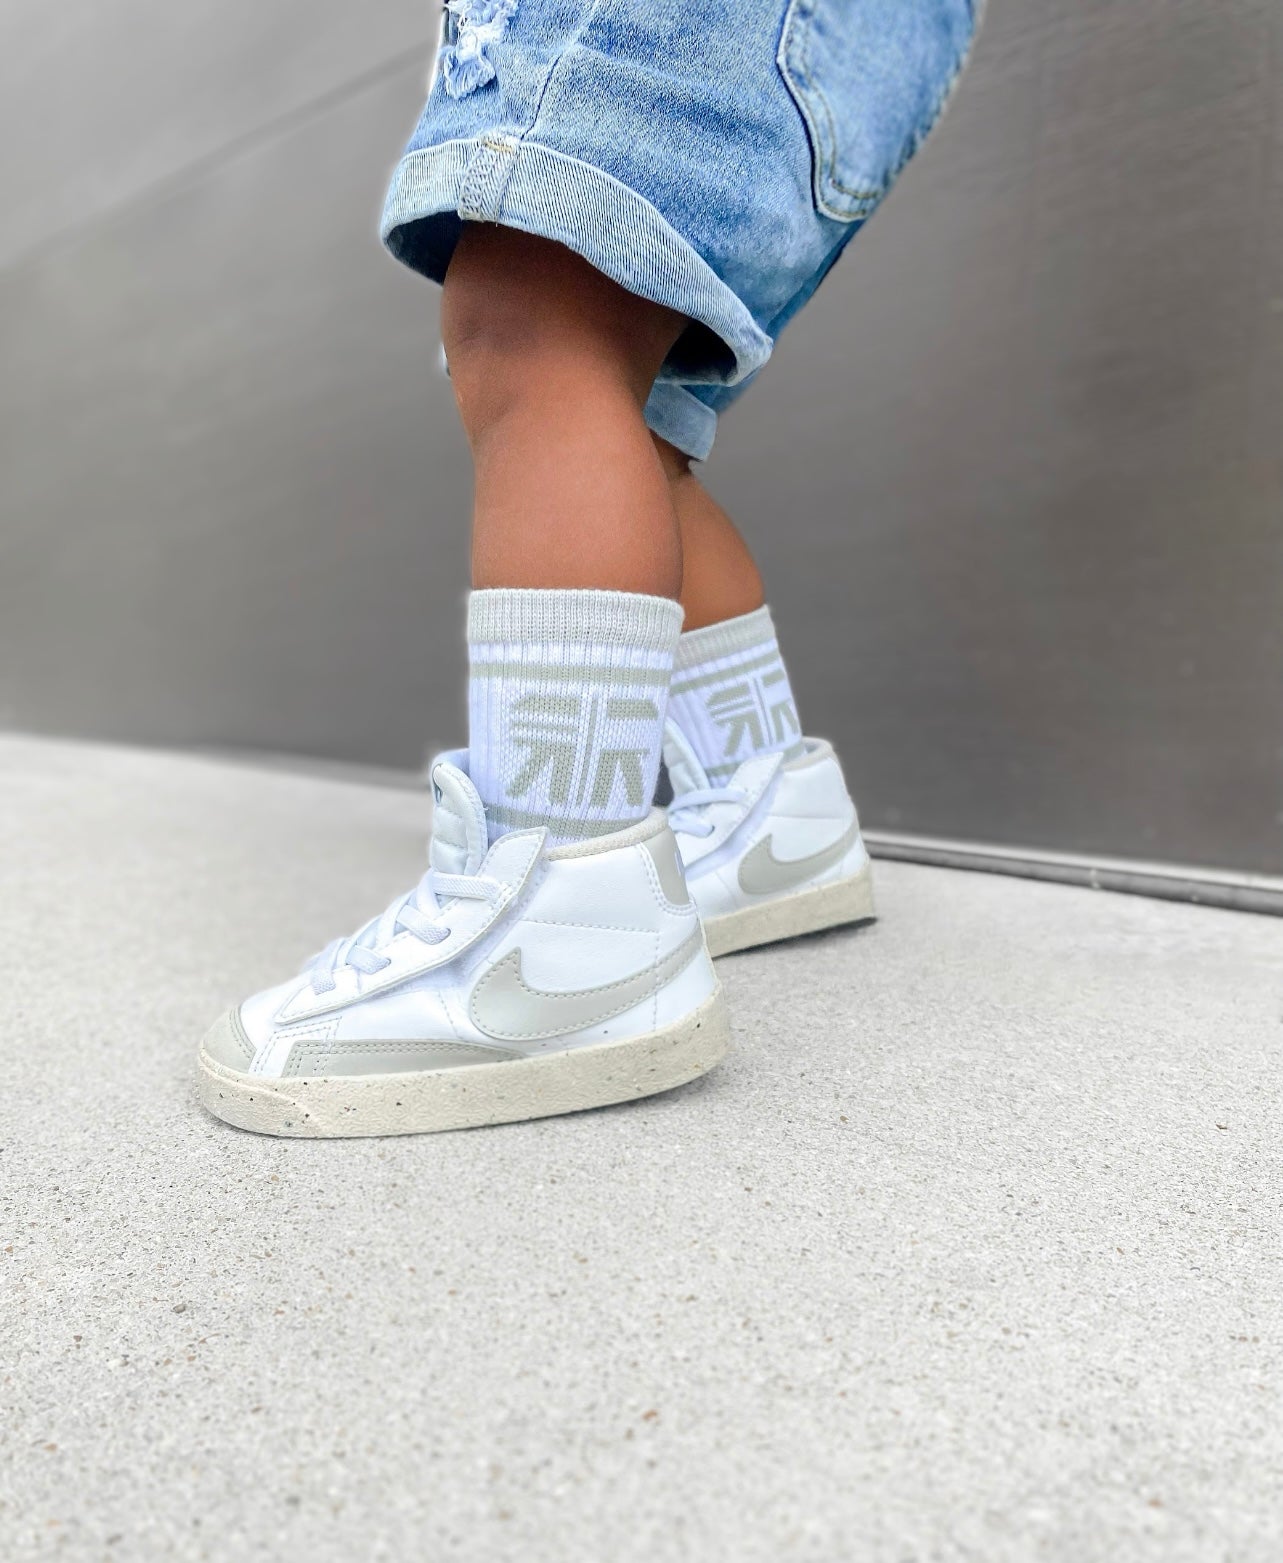 Gray + White Toddler Sock Pack